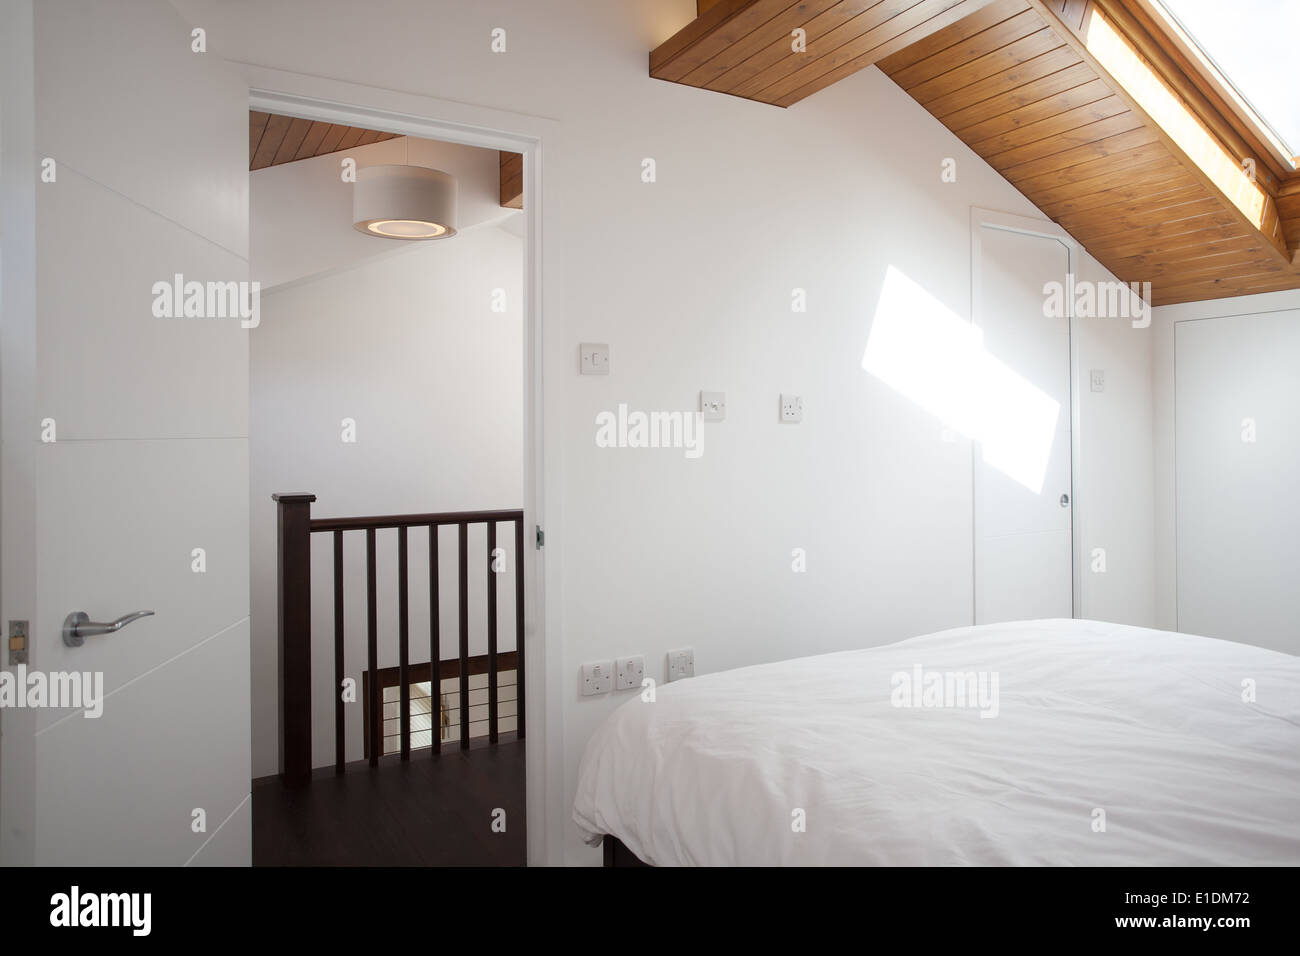 Convertito mansarda camera da letto nella casa moderna. Londra, Regno Unito Foto Stock